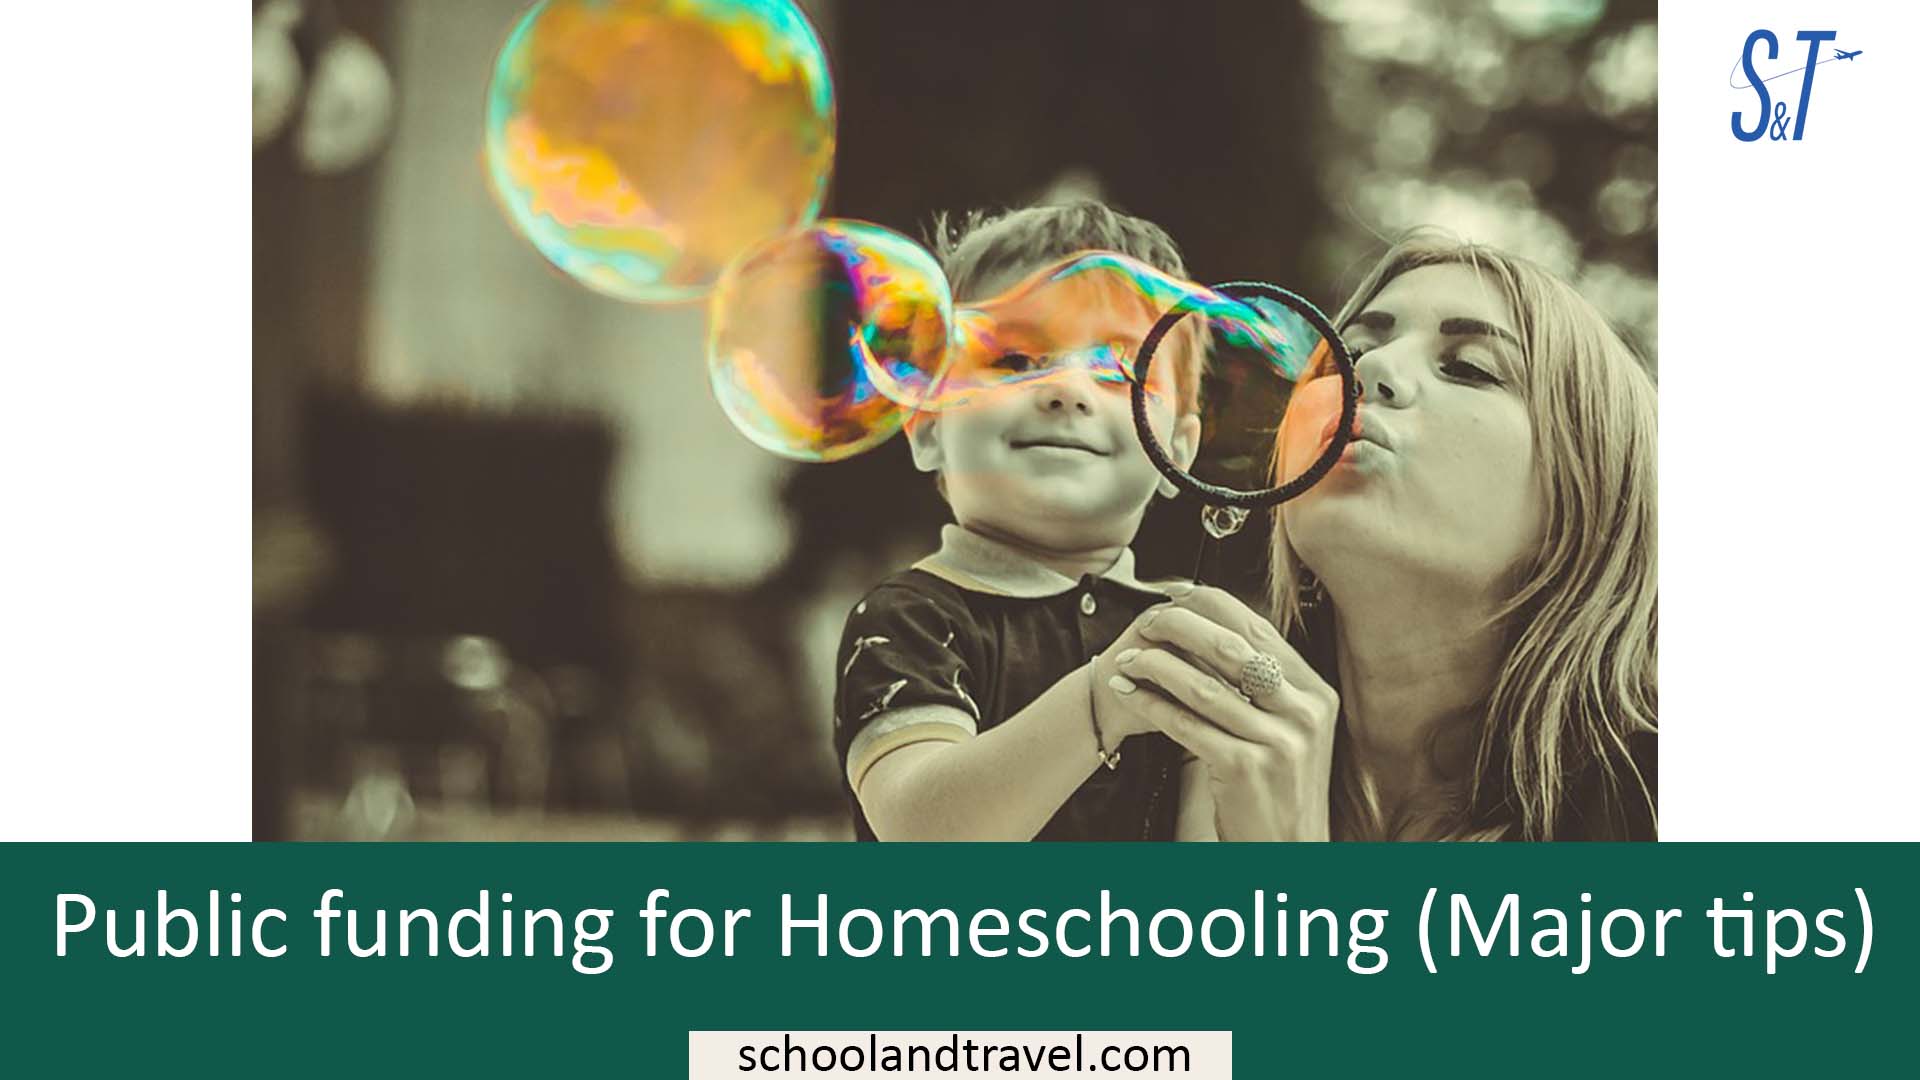 Public funding for Homeschooling (Major tips)